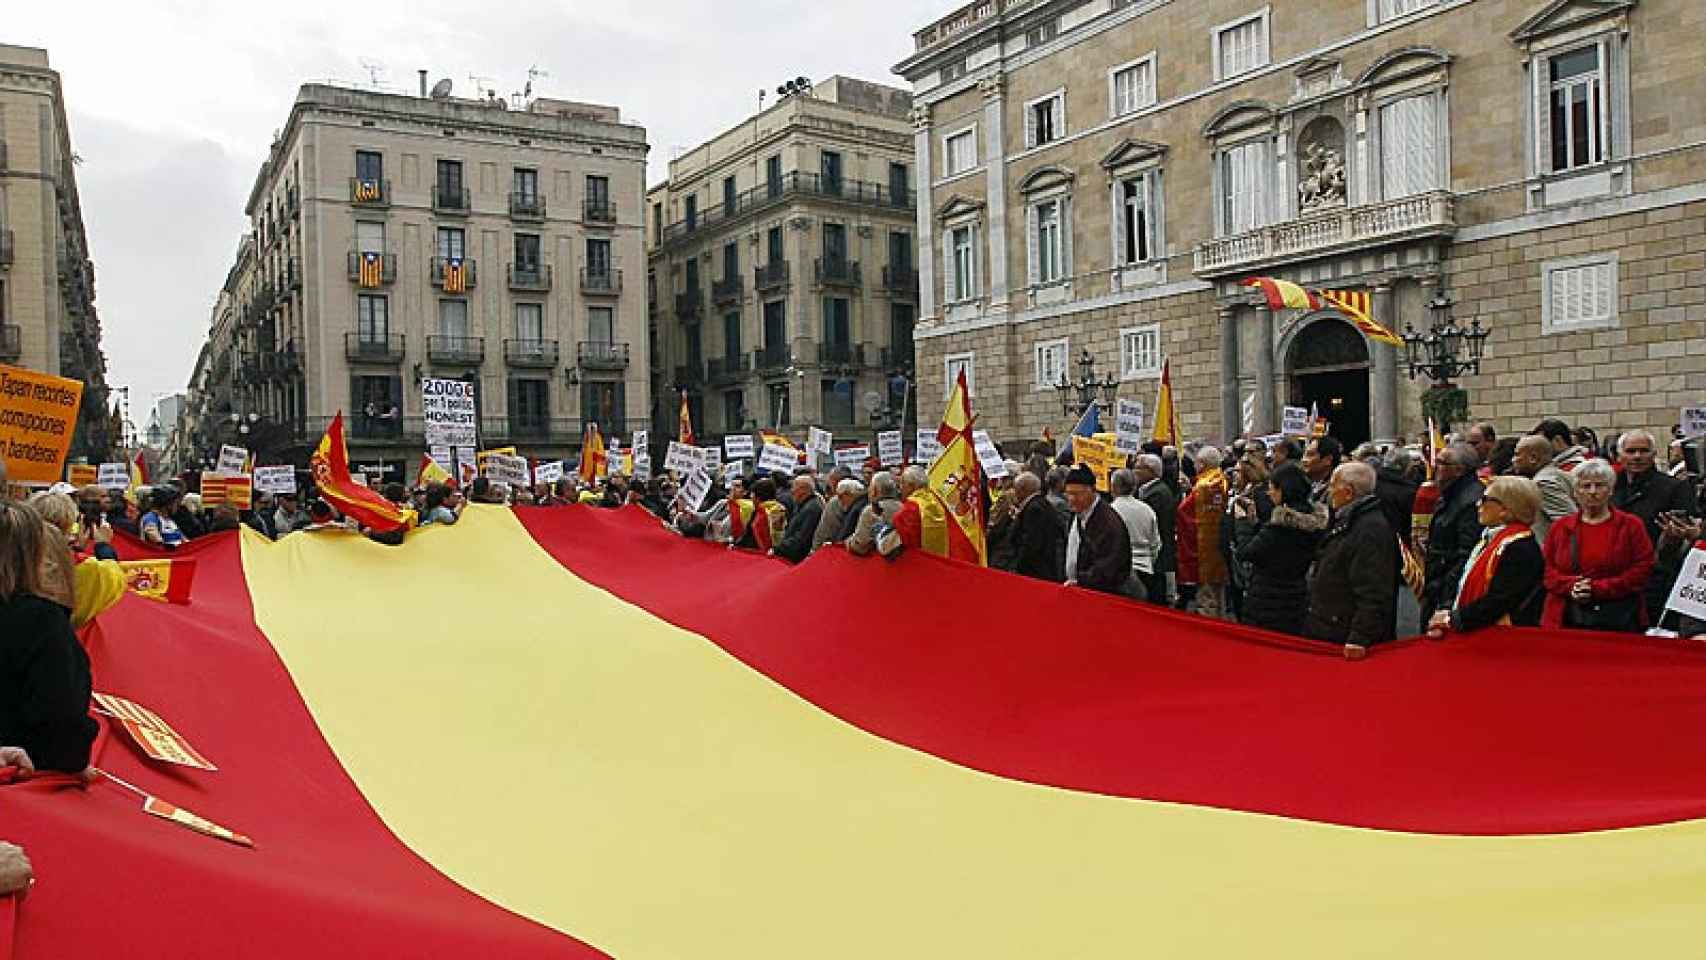 Convocados por Moviment Cívic d'Espanya i Catalans, los asistentes corean consignas contra Mas, Pujol y el proceso independentista